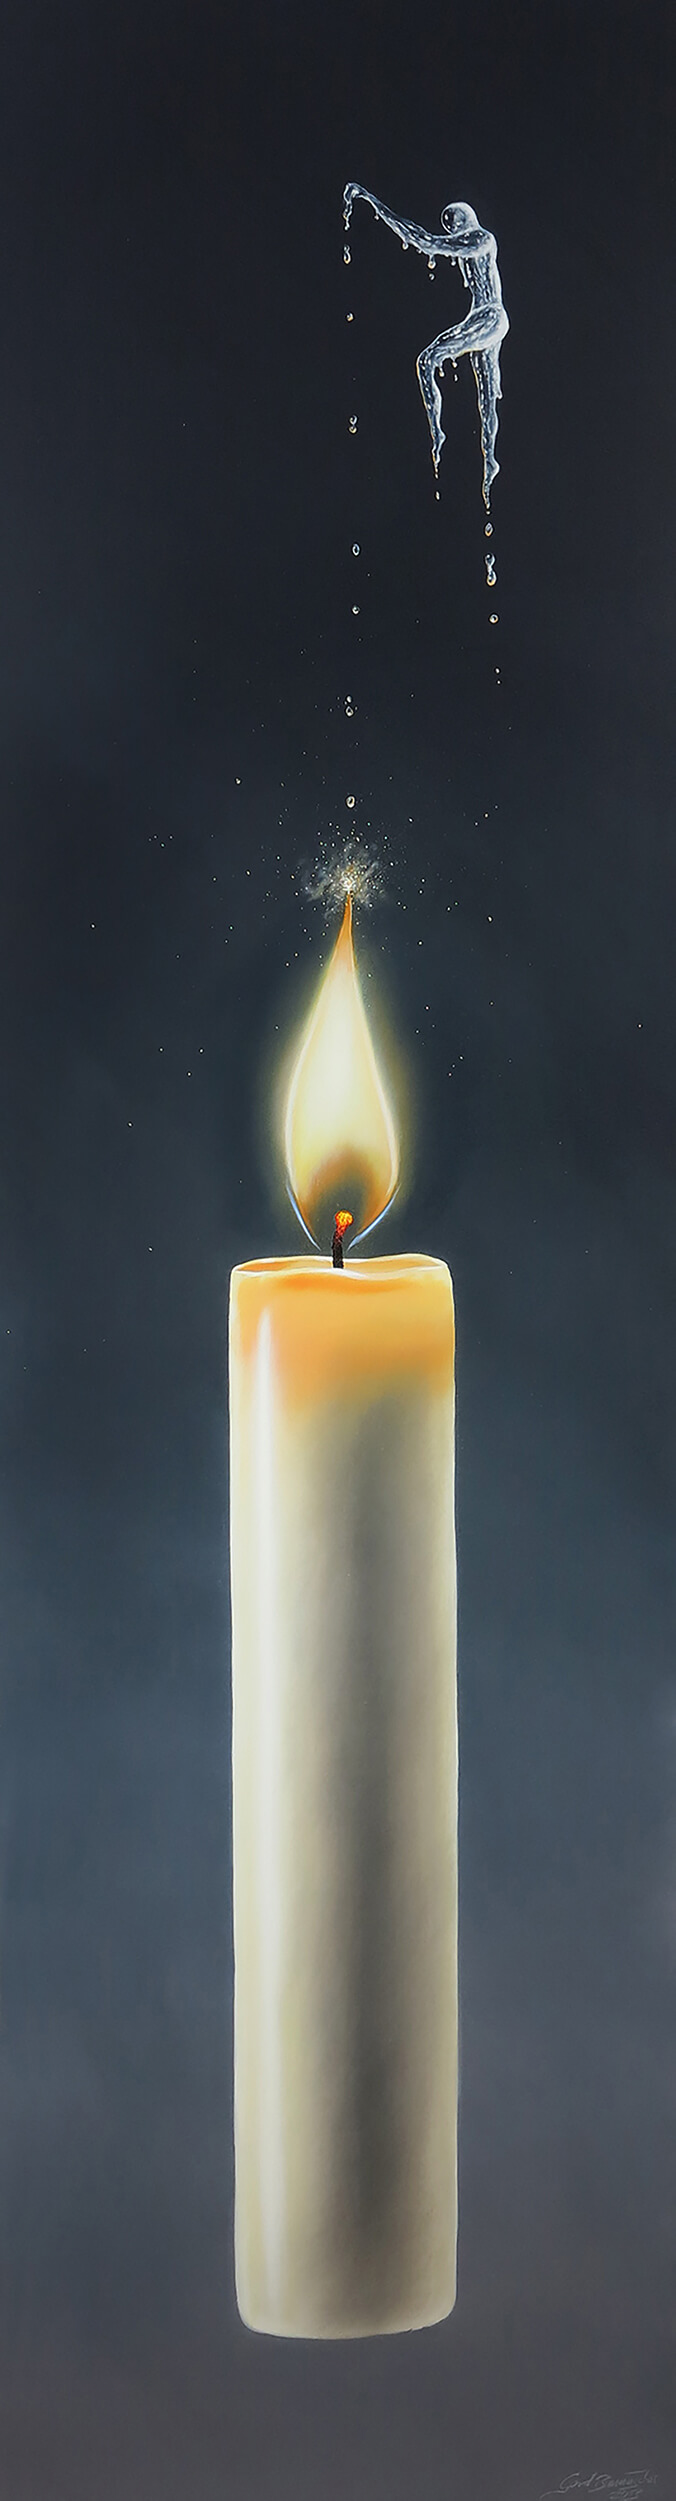 Spiel mit dem Feuer | Acryl auf Holz | 49 x 168.5 cm